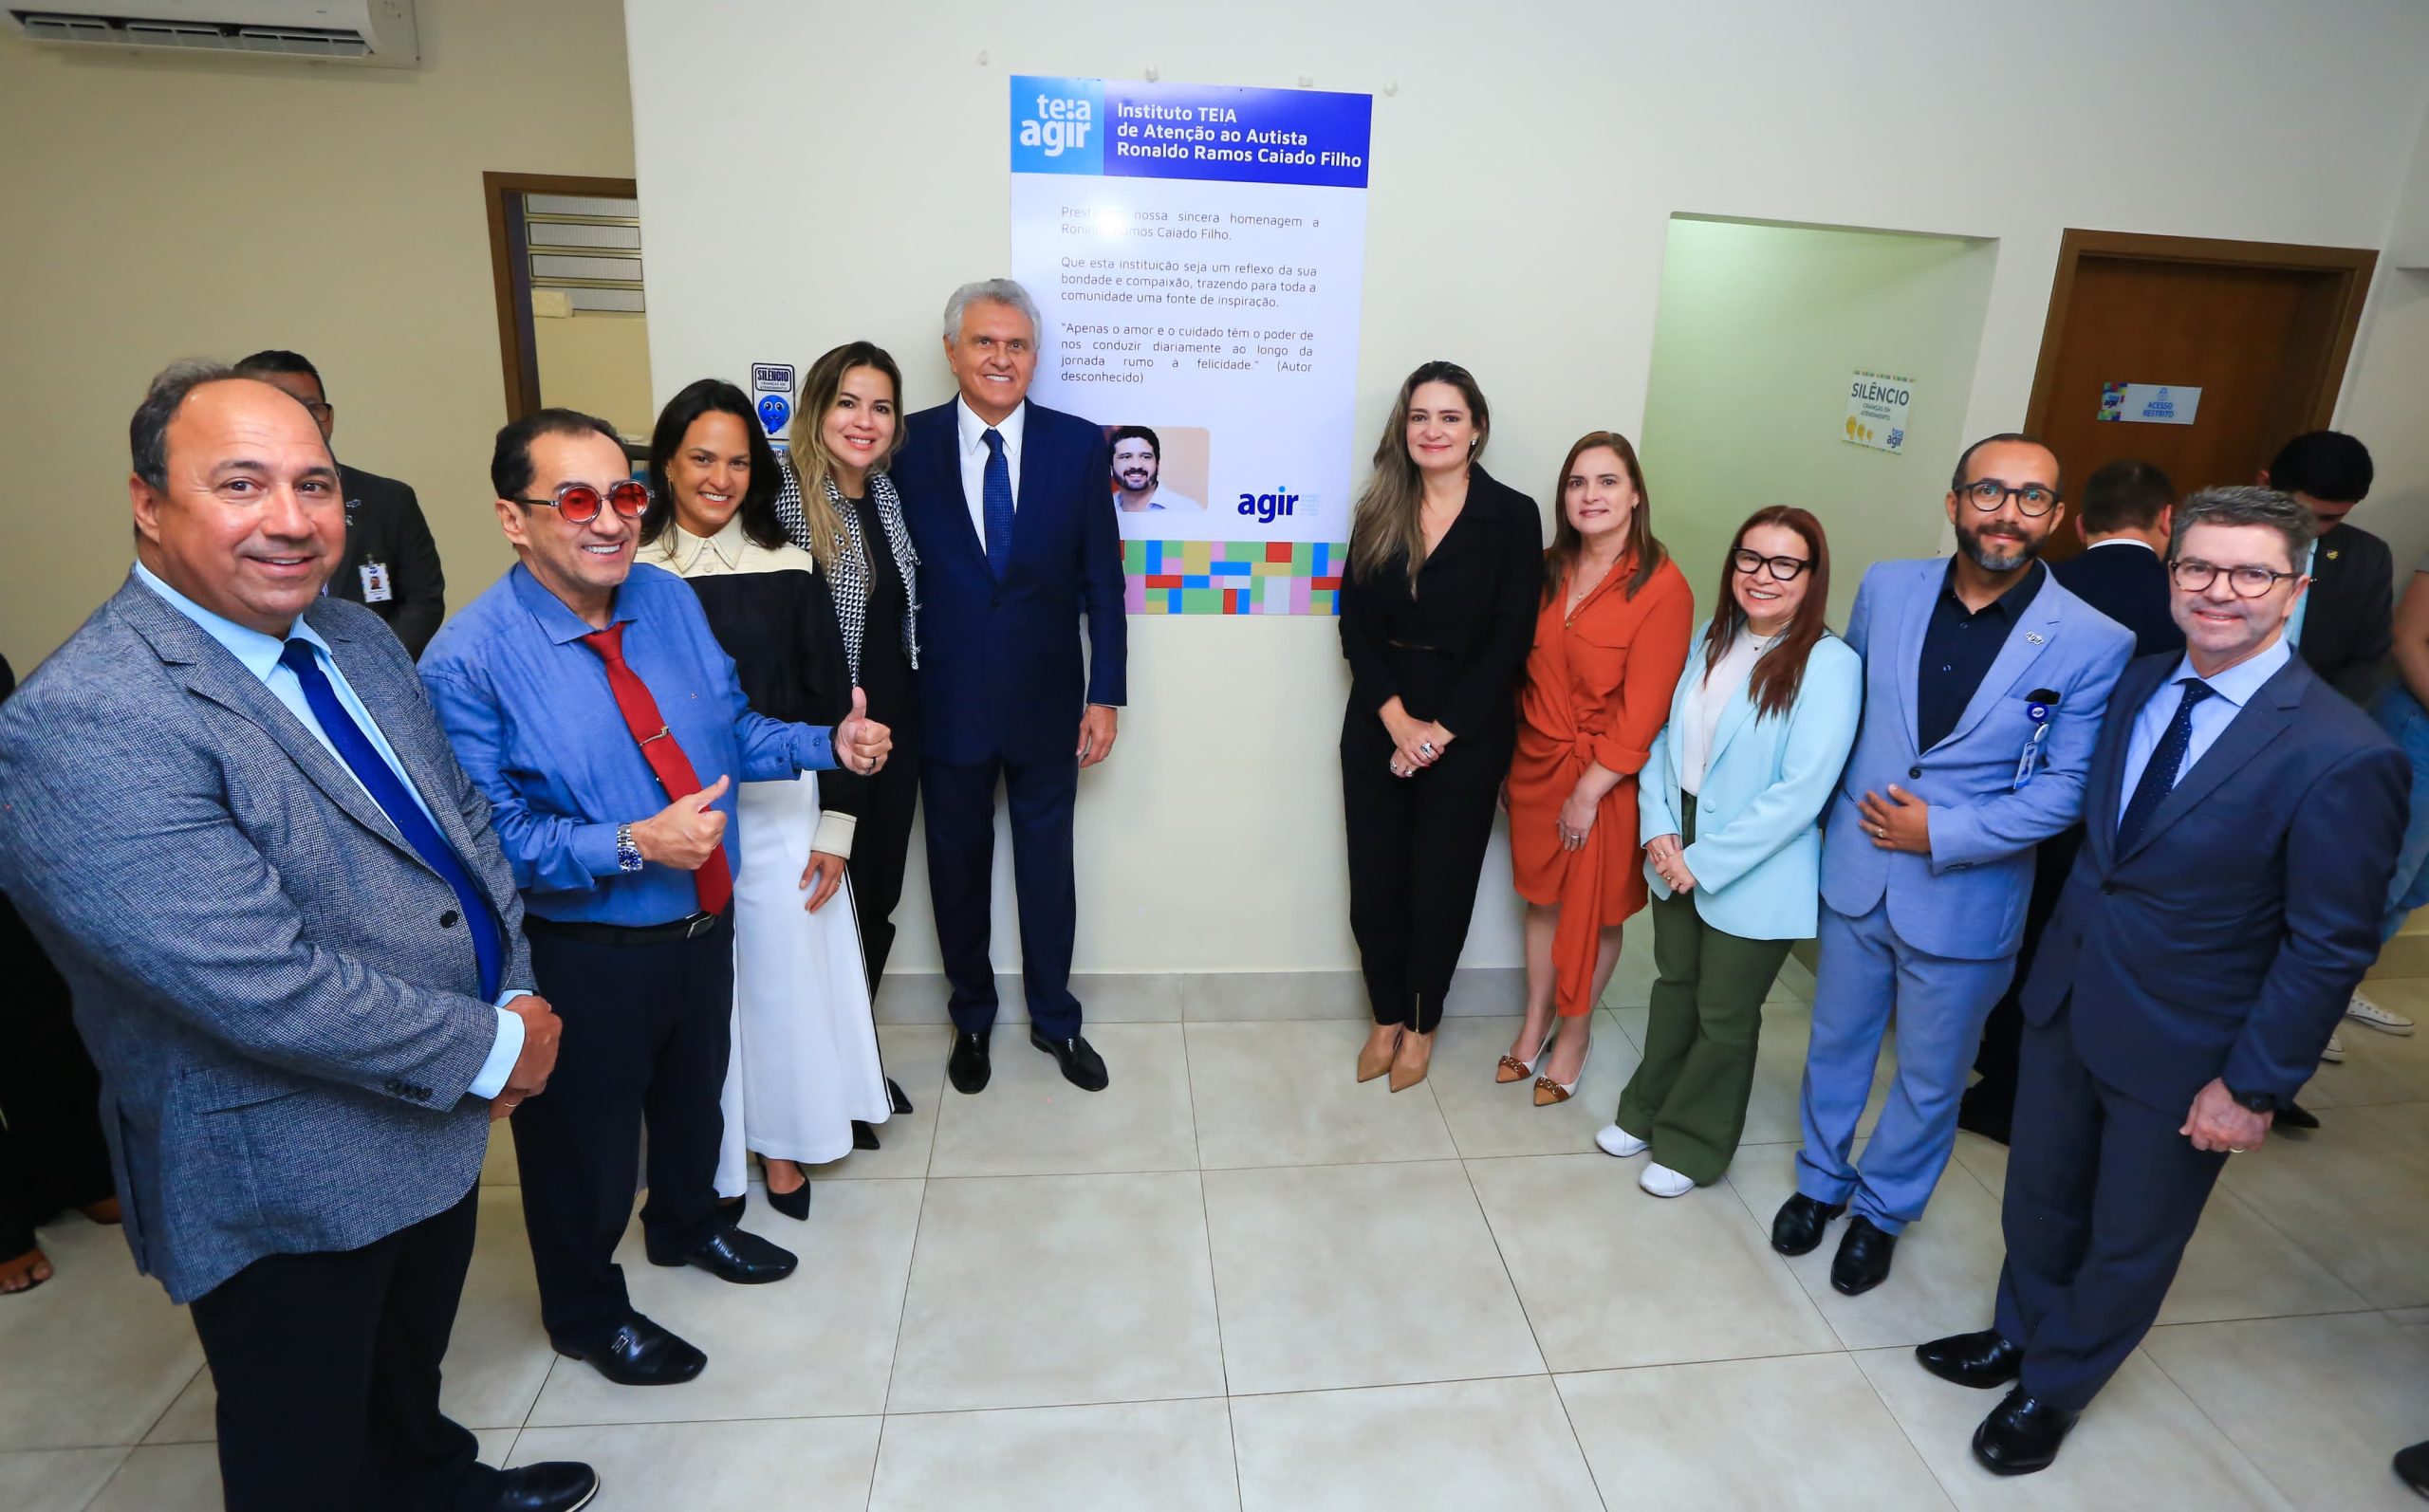  Governador Ronaldo Caiado visita clínica especializada em autismo: troca de experiências para avançar no atendimento à população